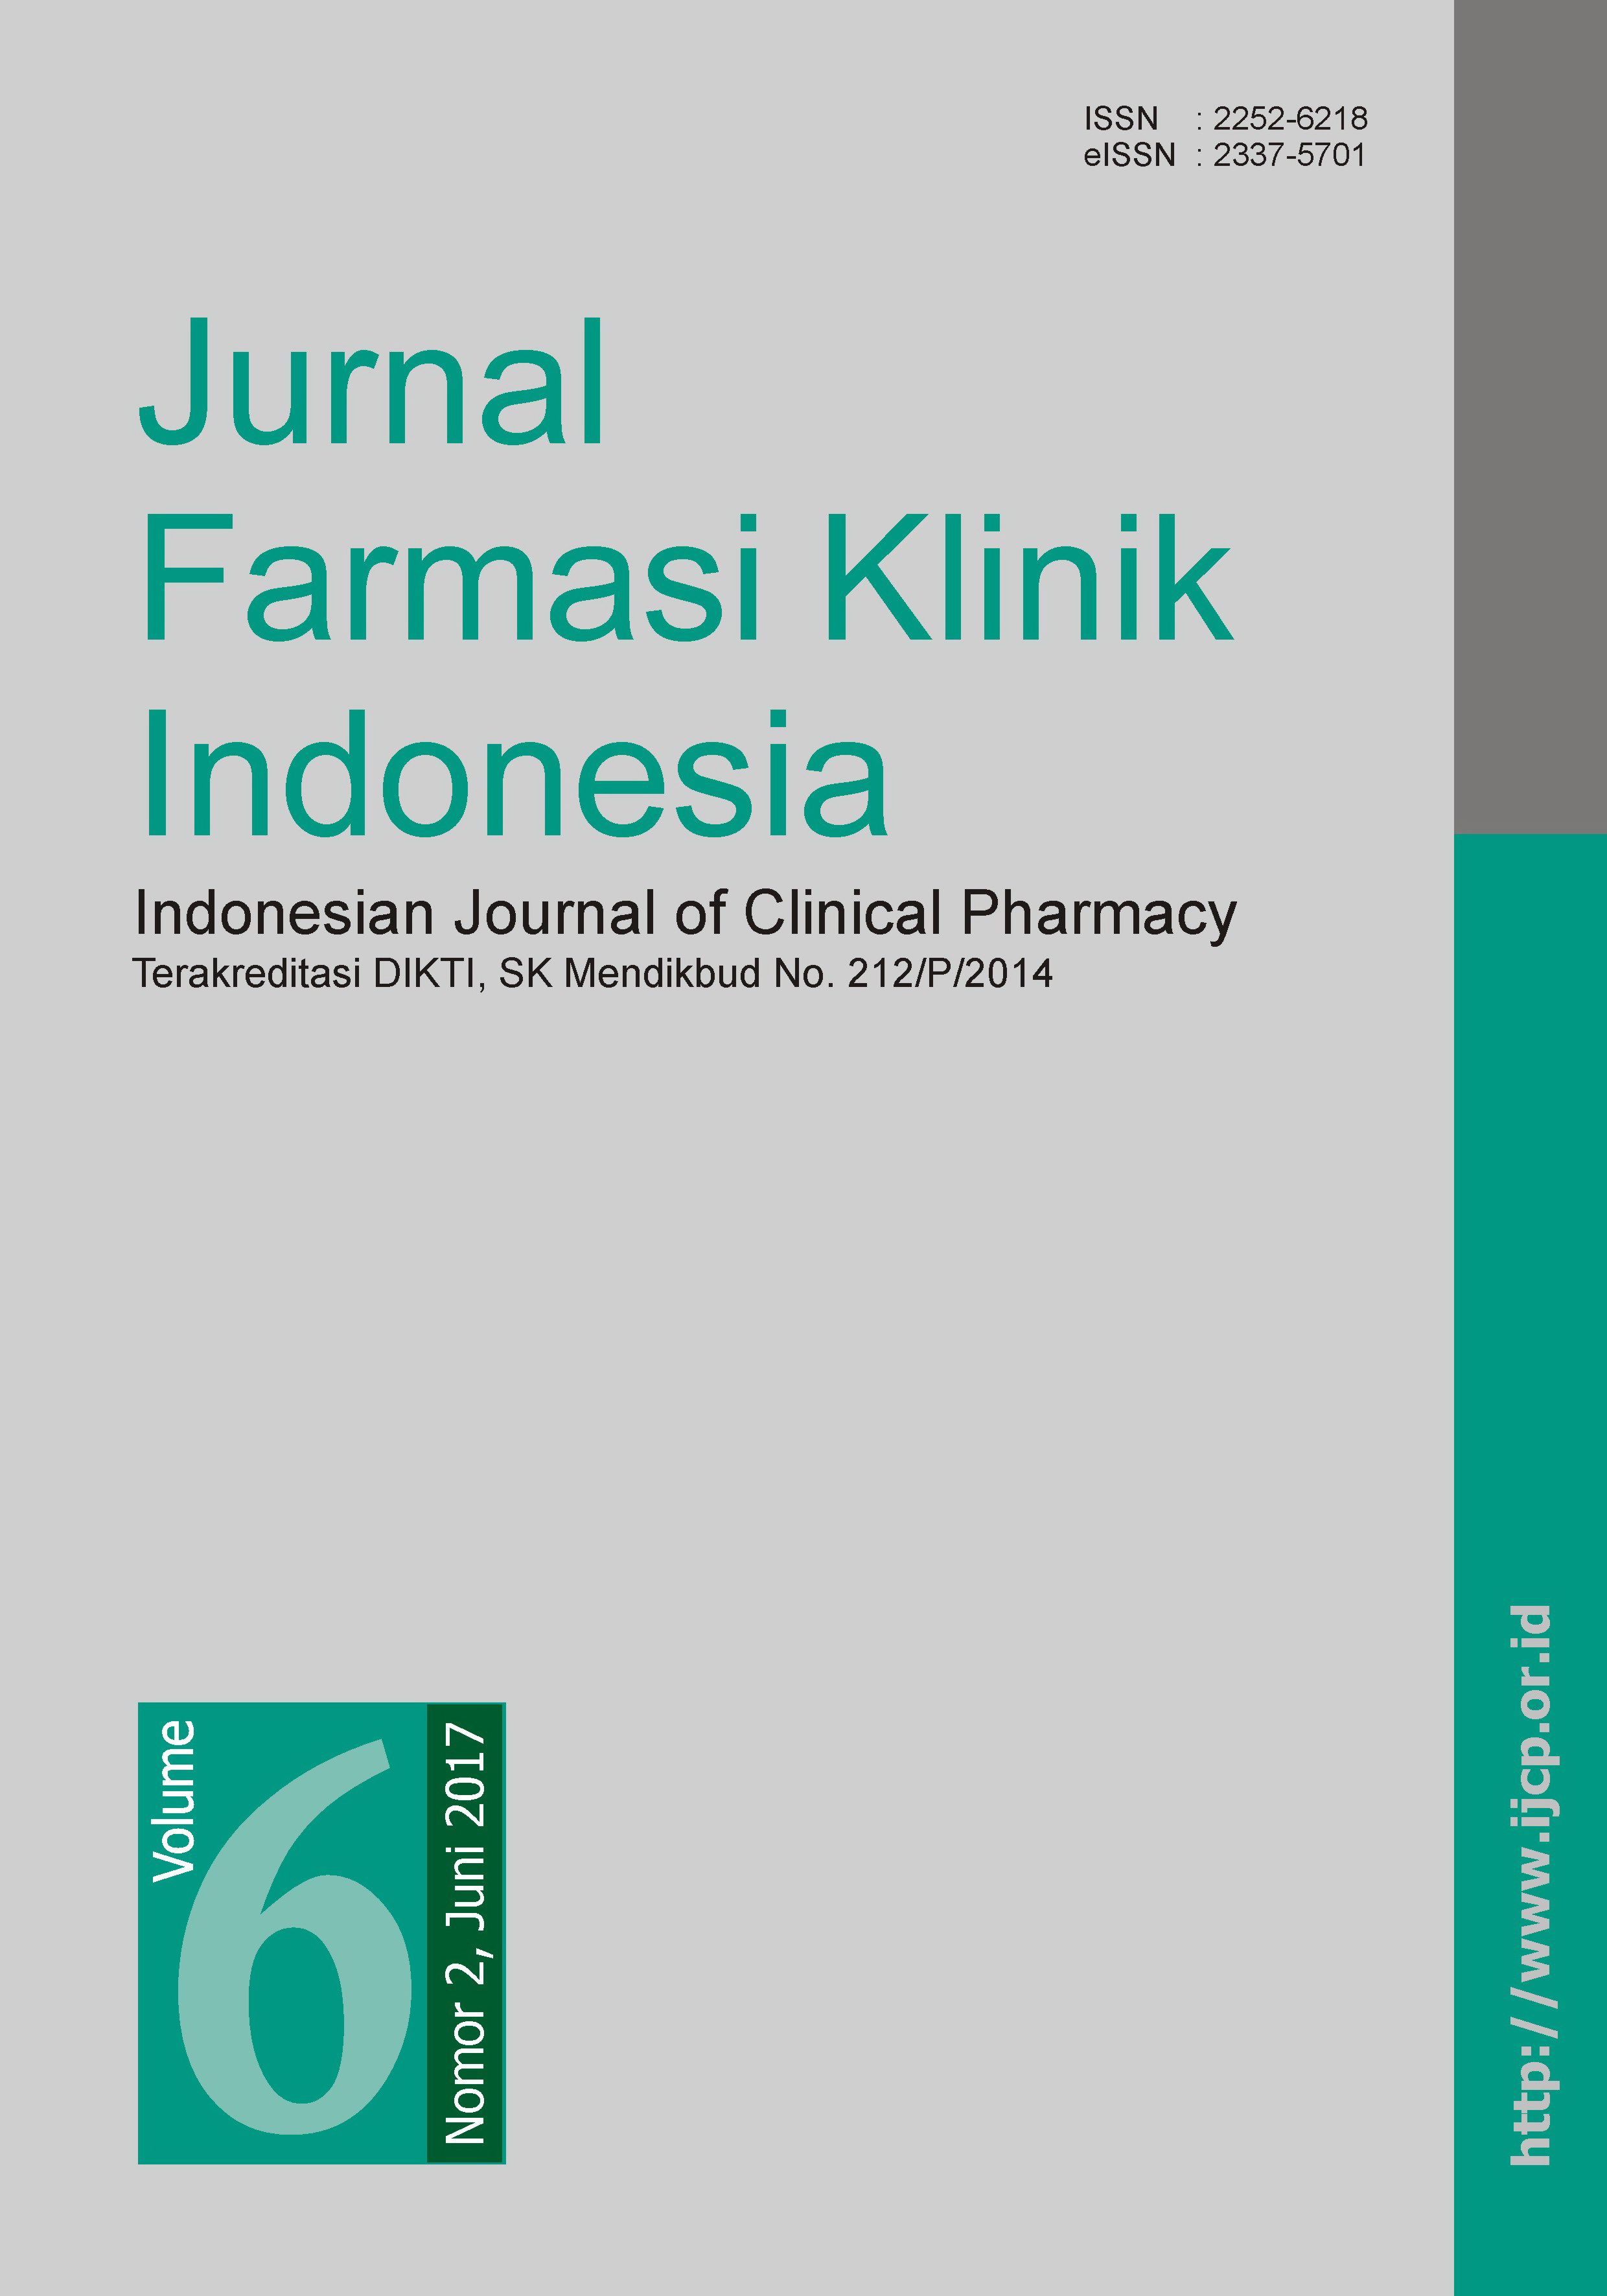 Jurnal Farmasi Klinik Indonesia Volume 6 Nomor 2, Juni 2017